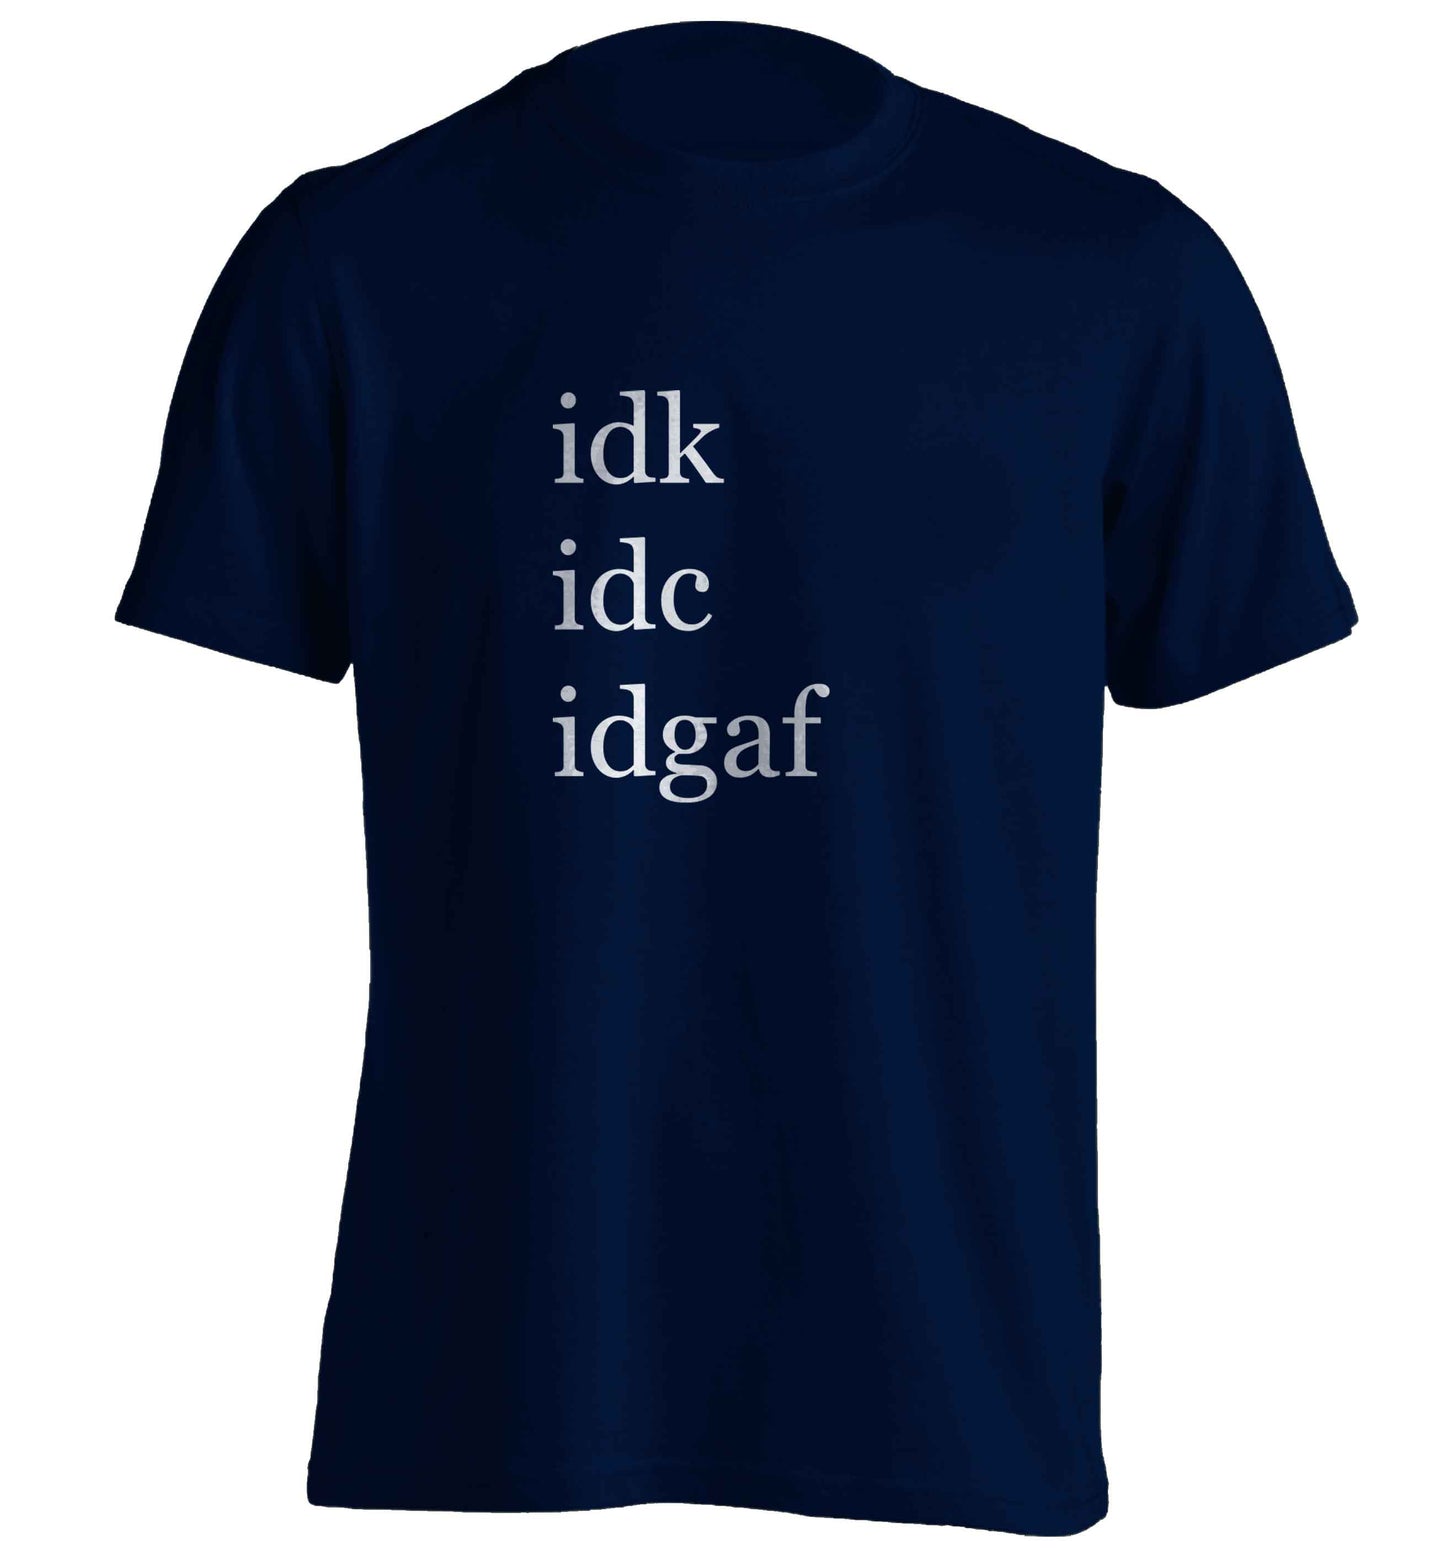 Idk Idc Idgaf adults unisex navy Tshirt 2XL